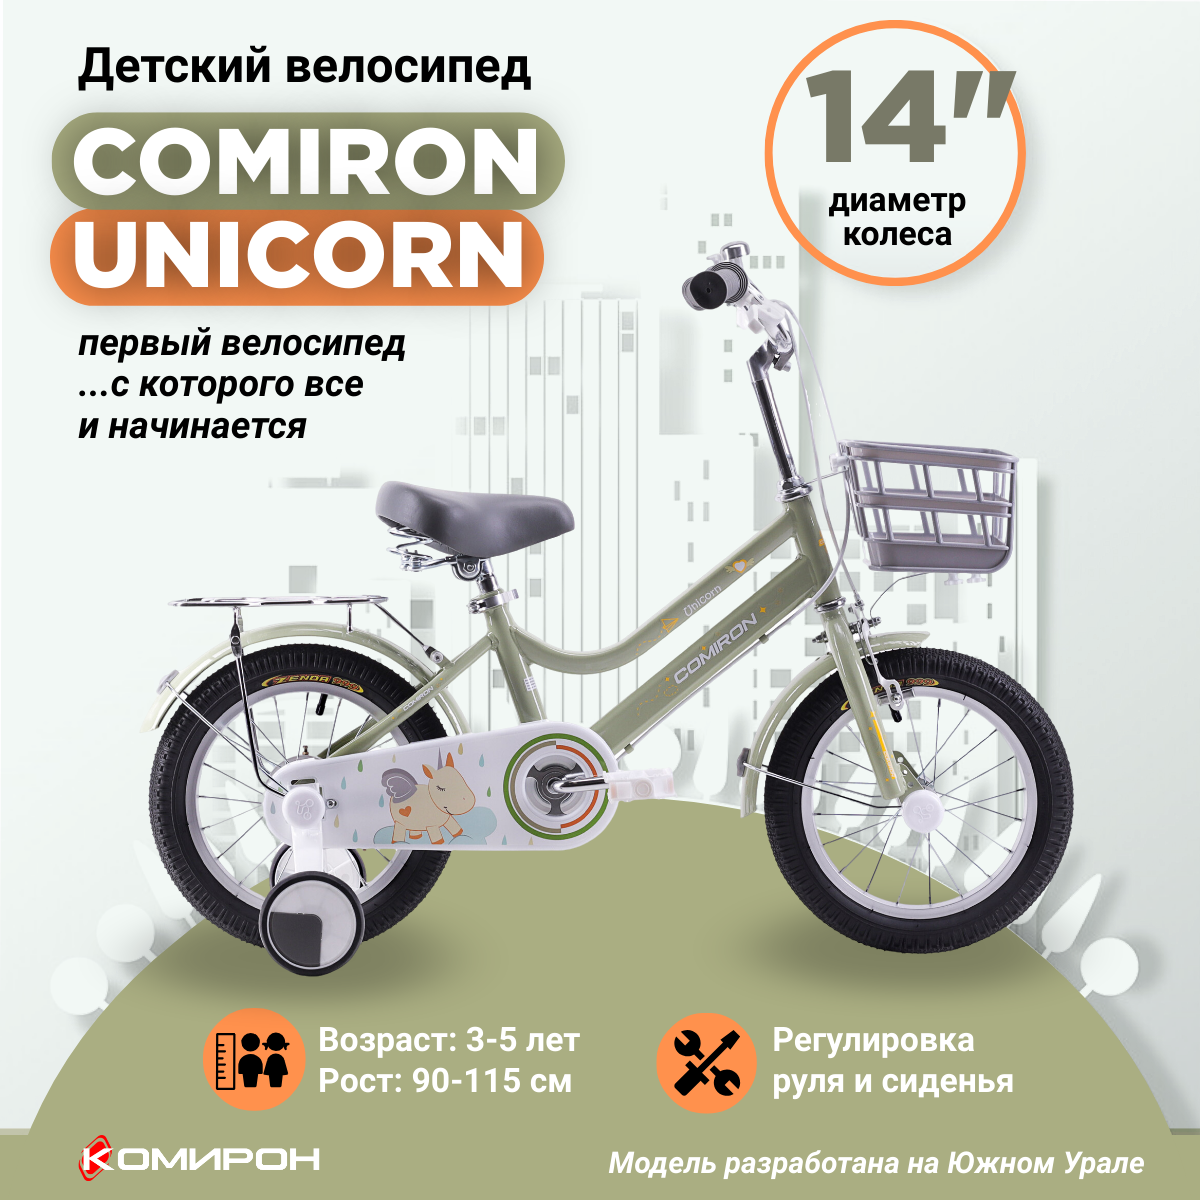 Велосипед детский двухколесный 14" COMIRON UNICORN GREEN, на 3-5 лет, рост 90-115 см / хаки